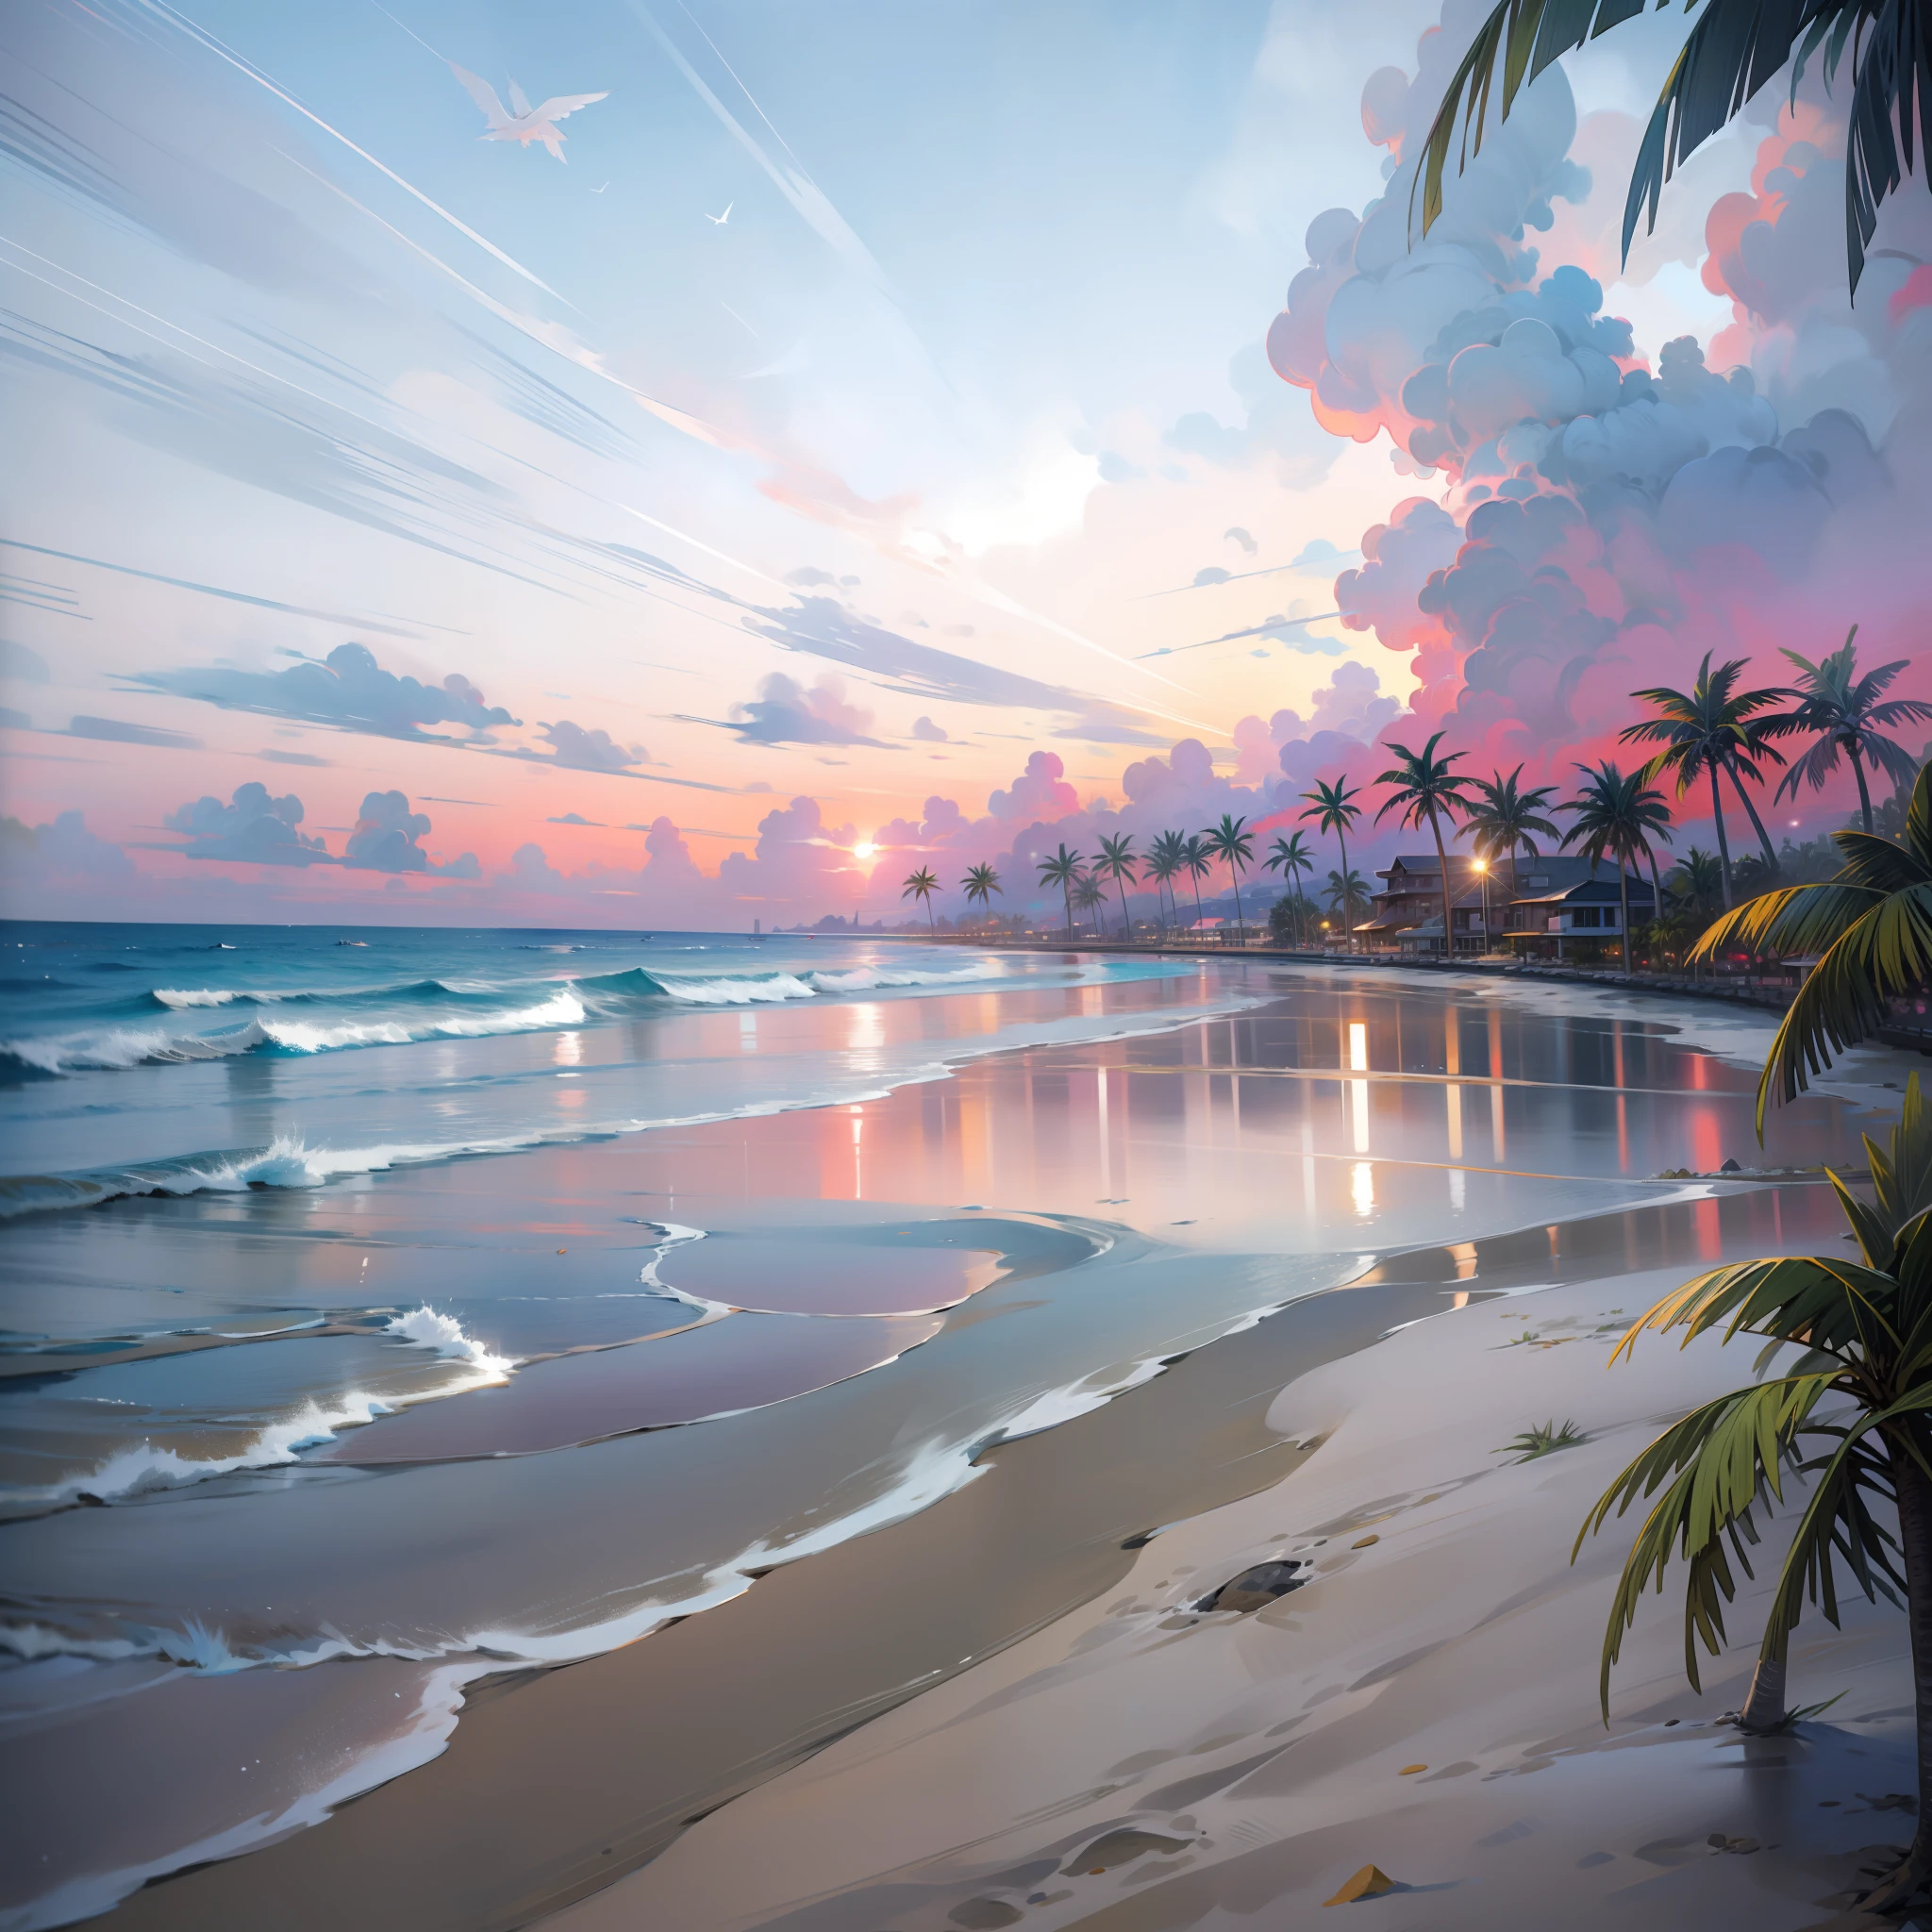 um pôr do sol absolutamente hipnotizante na praia com uma mistura de laranja, rosa e amarelo no céu. A água é cristalina, beijando suavemente a costa, e a praia de areia branca se estende até onde a vista alcança. A cena é dinâmica e de tirar o fôlego, com gaivotas voando alto no céu e palmeiras balançando suavemente. Absorva a atmosfera calma e deixe a tranquilidade envolver.